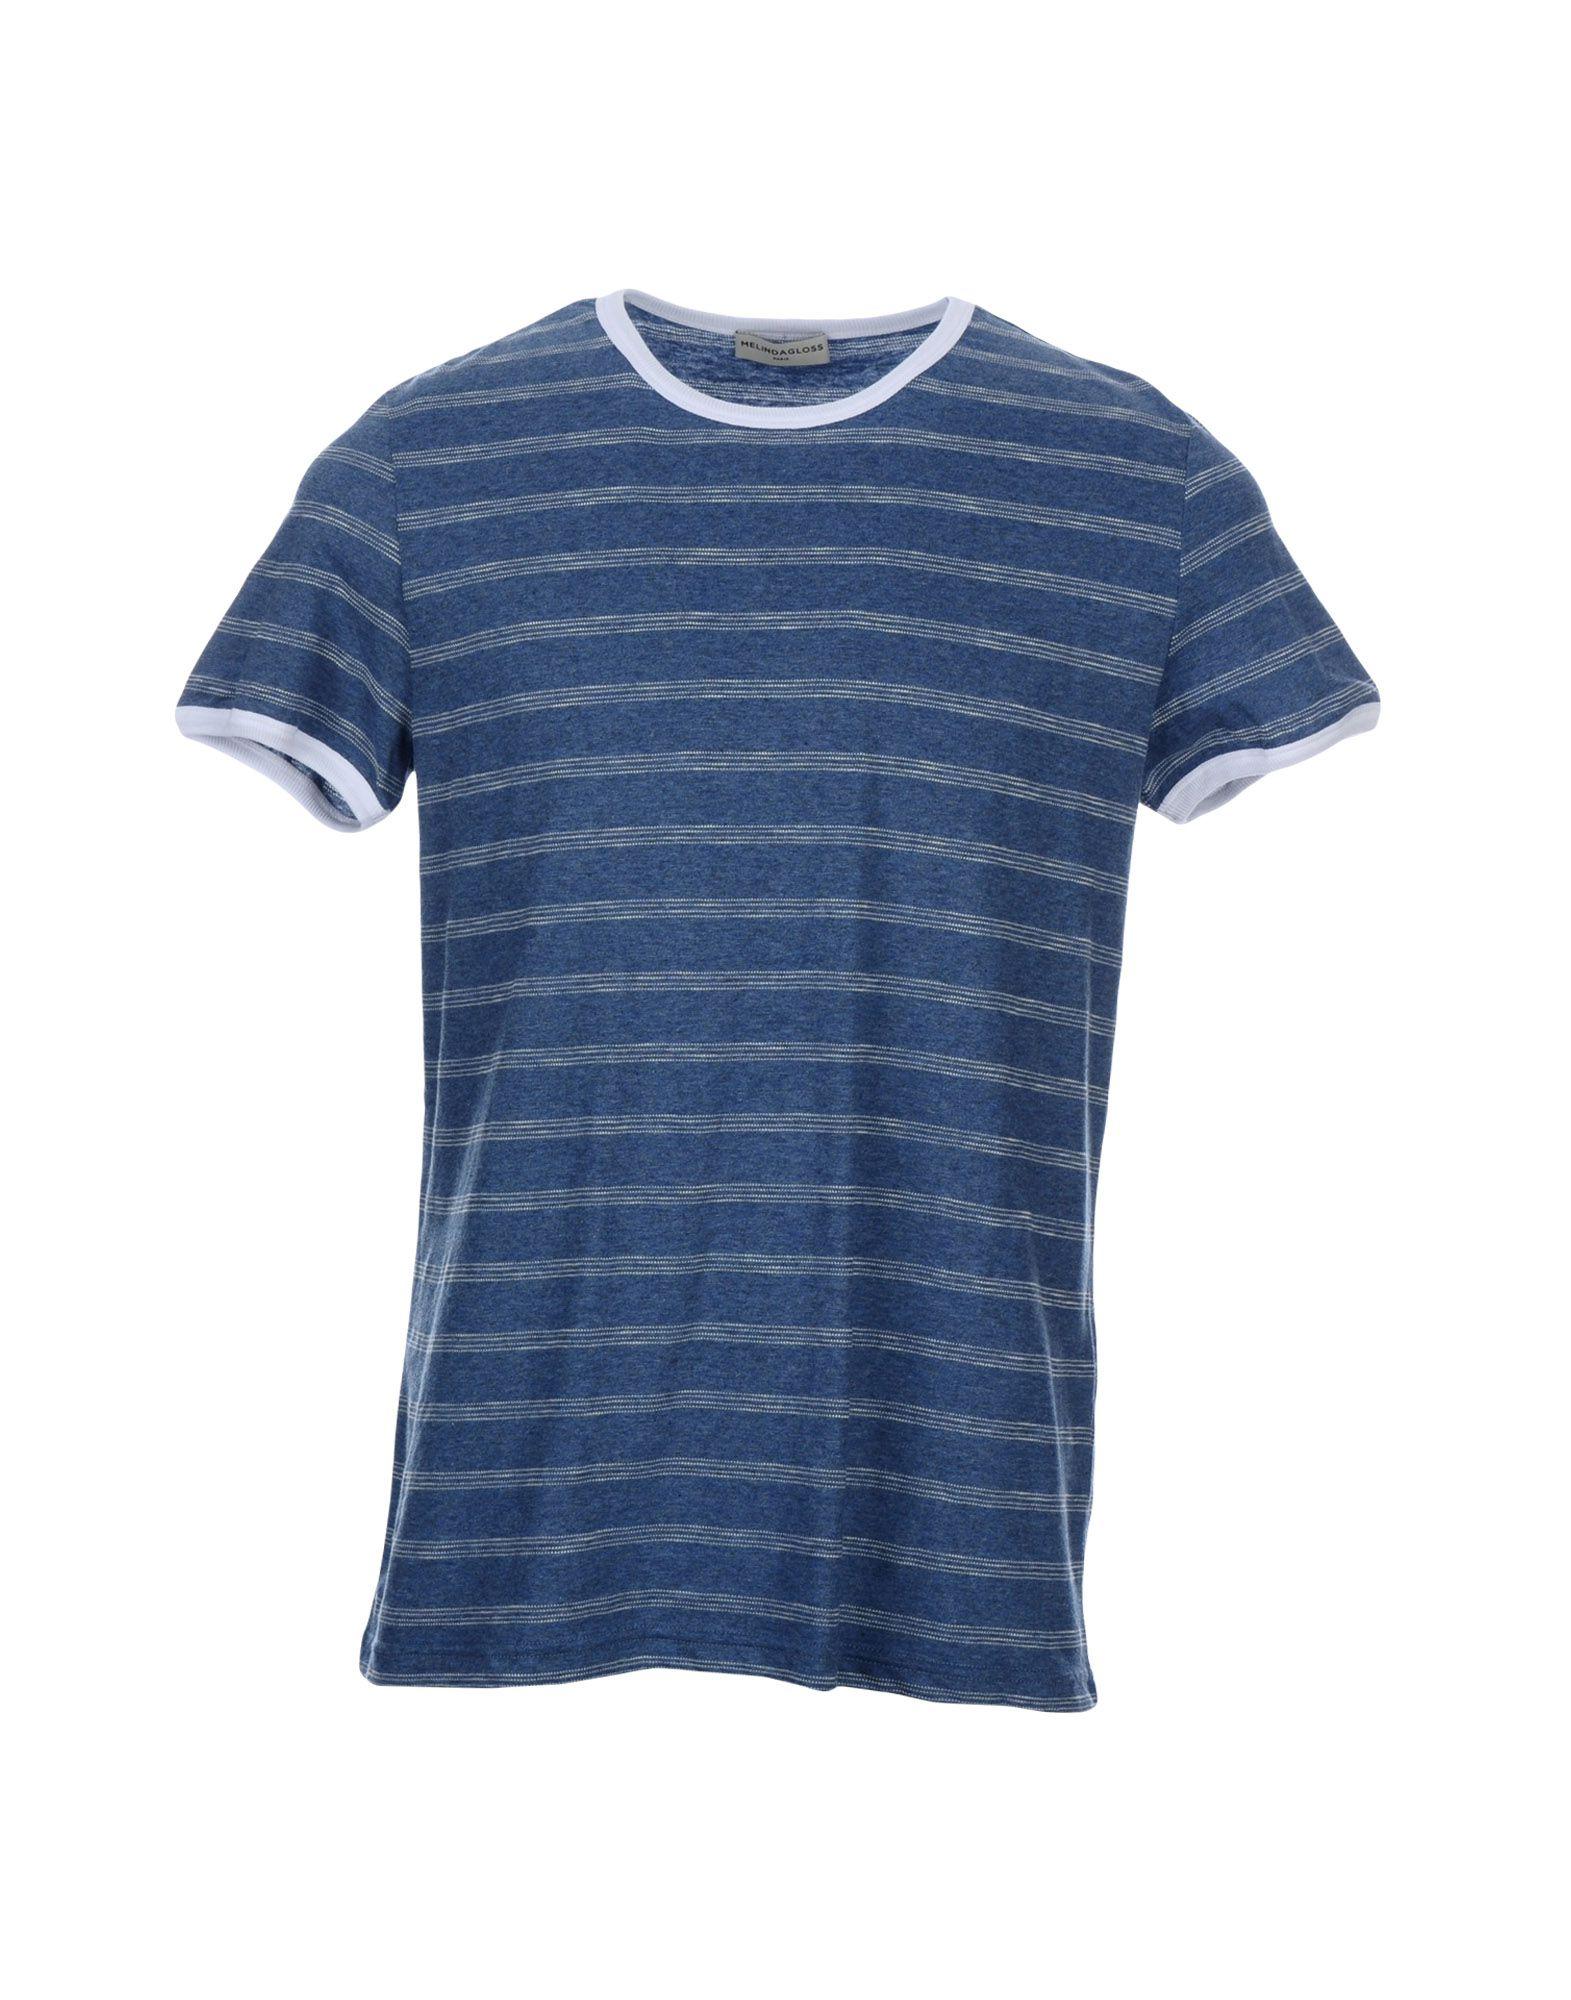 Melindagloss T-shirt In Pastel Blue | ModeSens